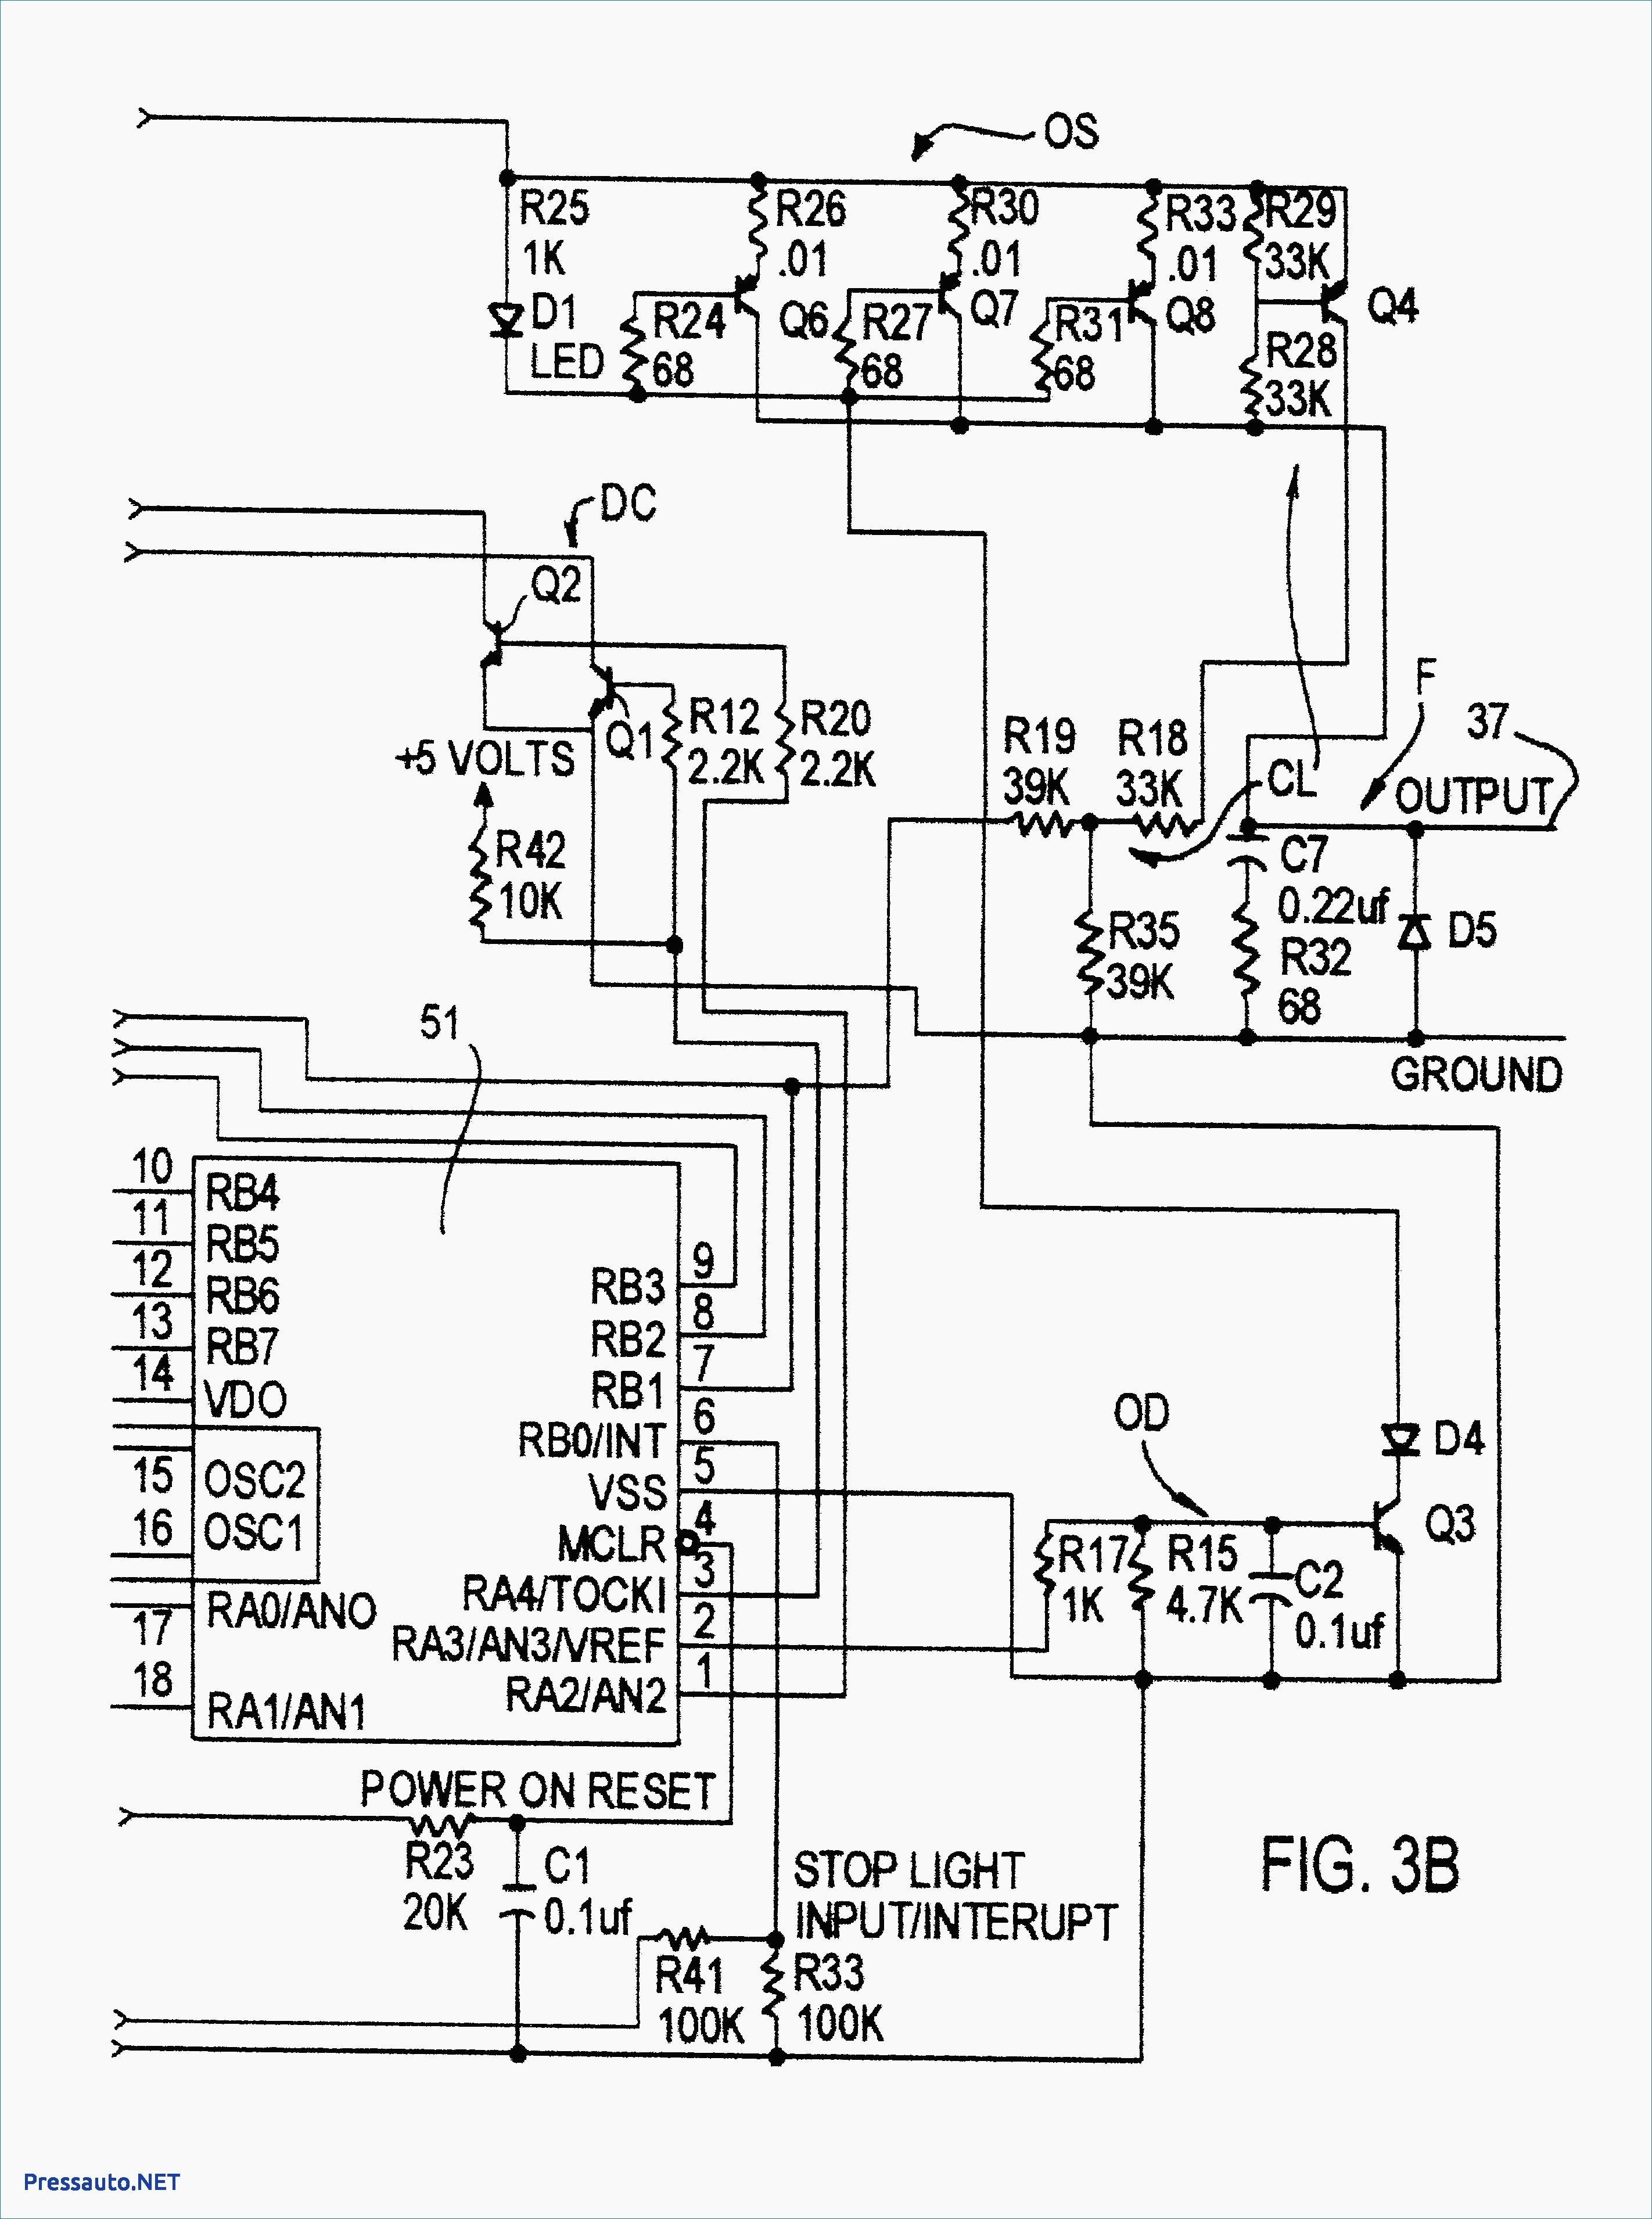 Guitar Wiring Diagram Creator Save Electric Circuit Diagram Creator